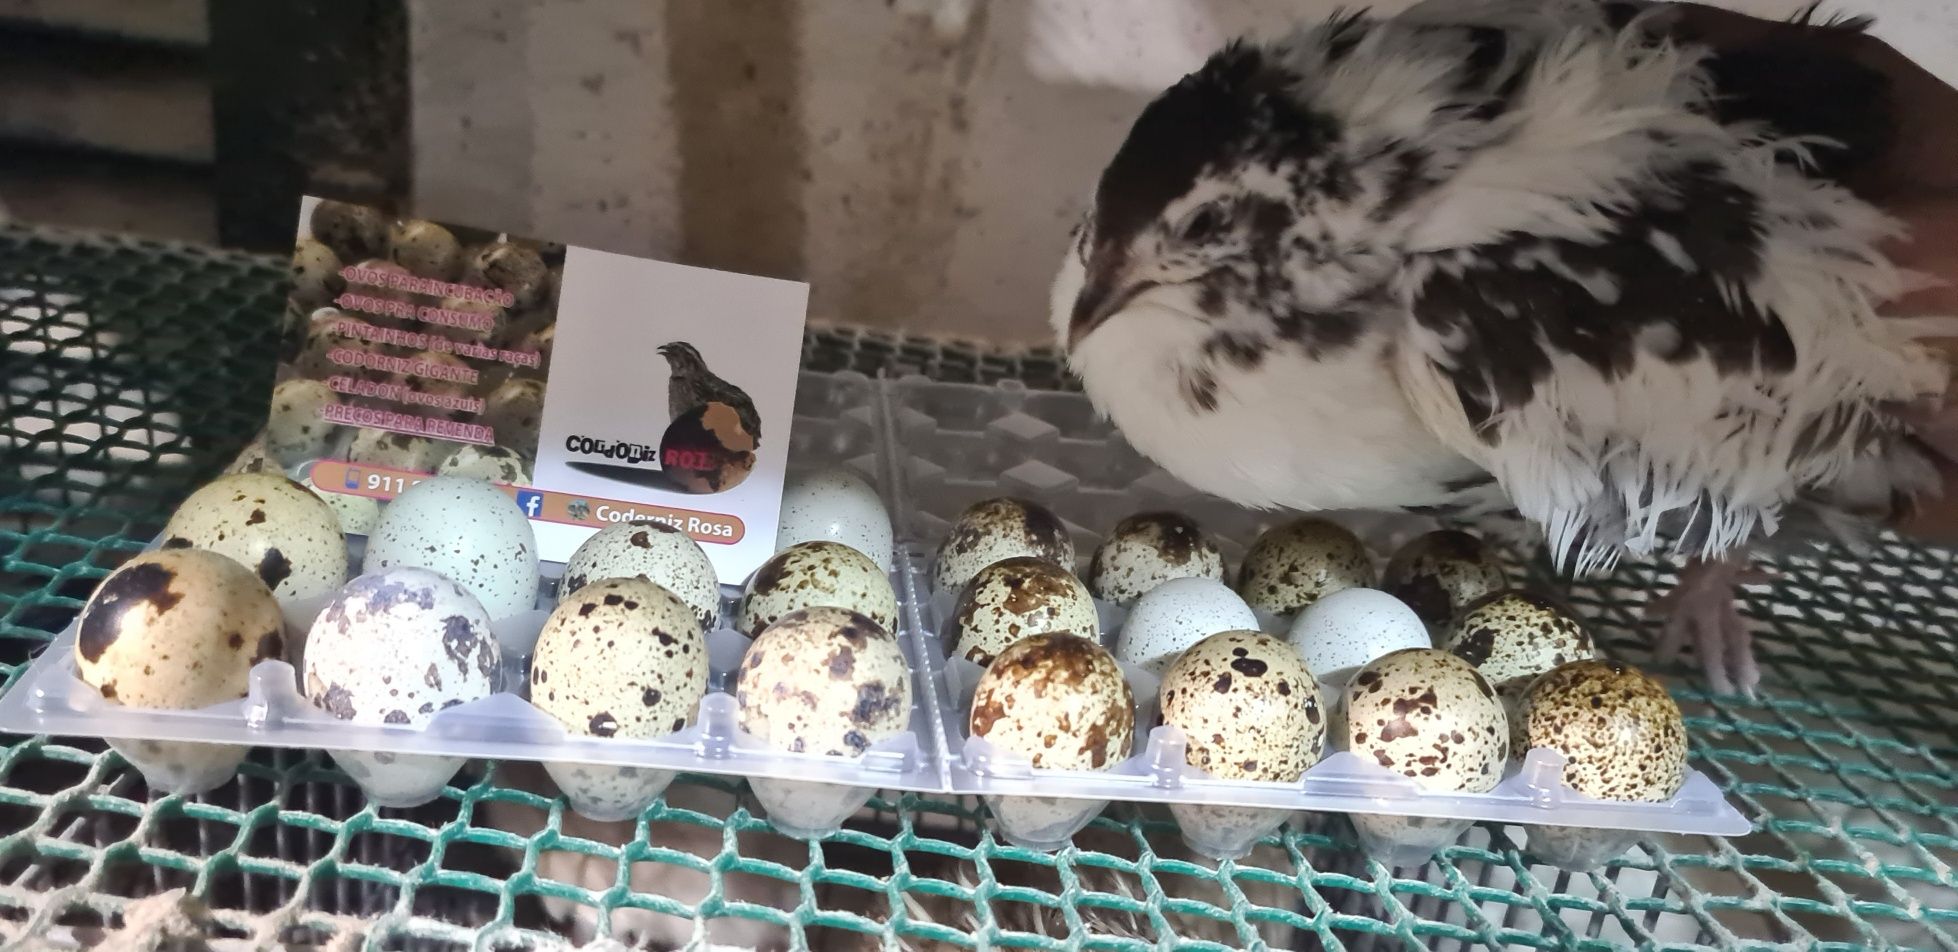 Ovos para incubação (codernizes gigantes)